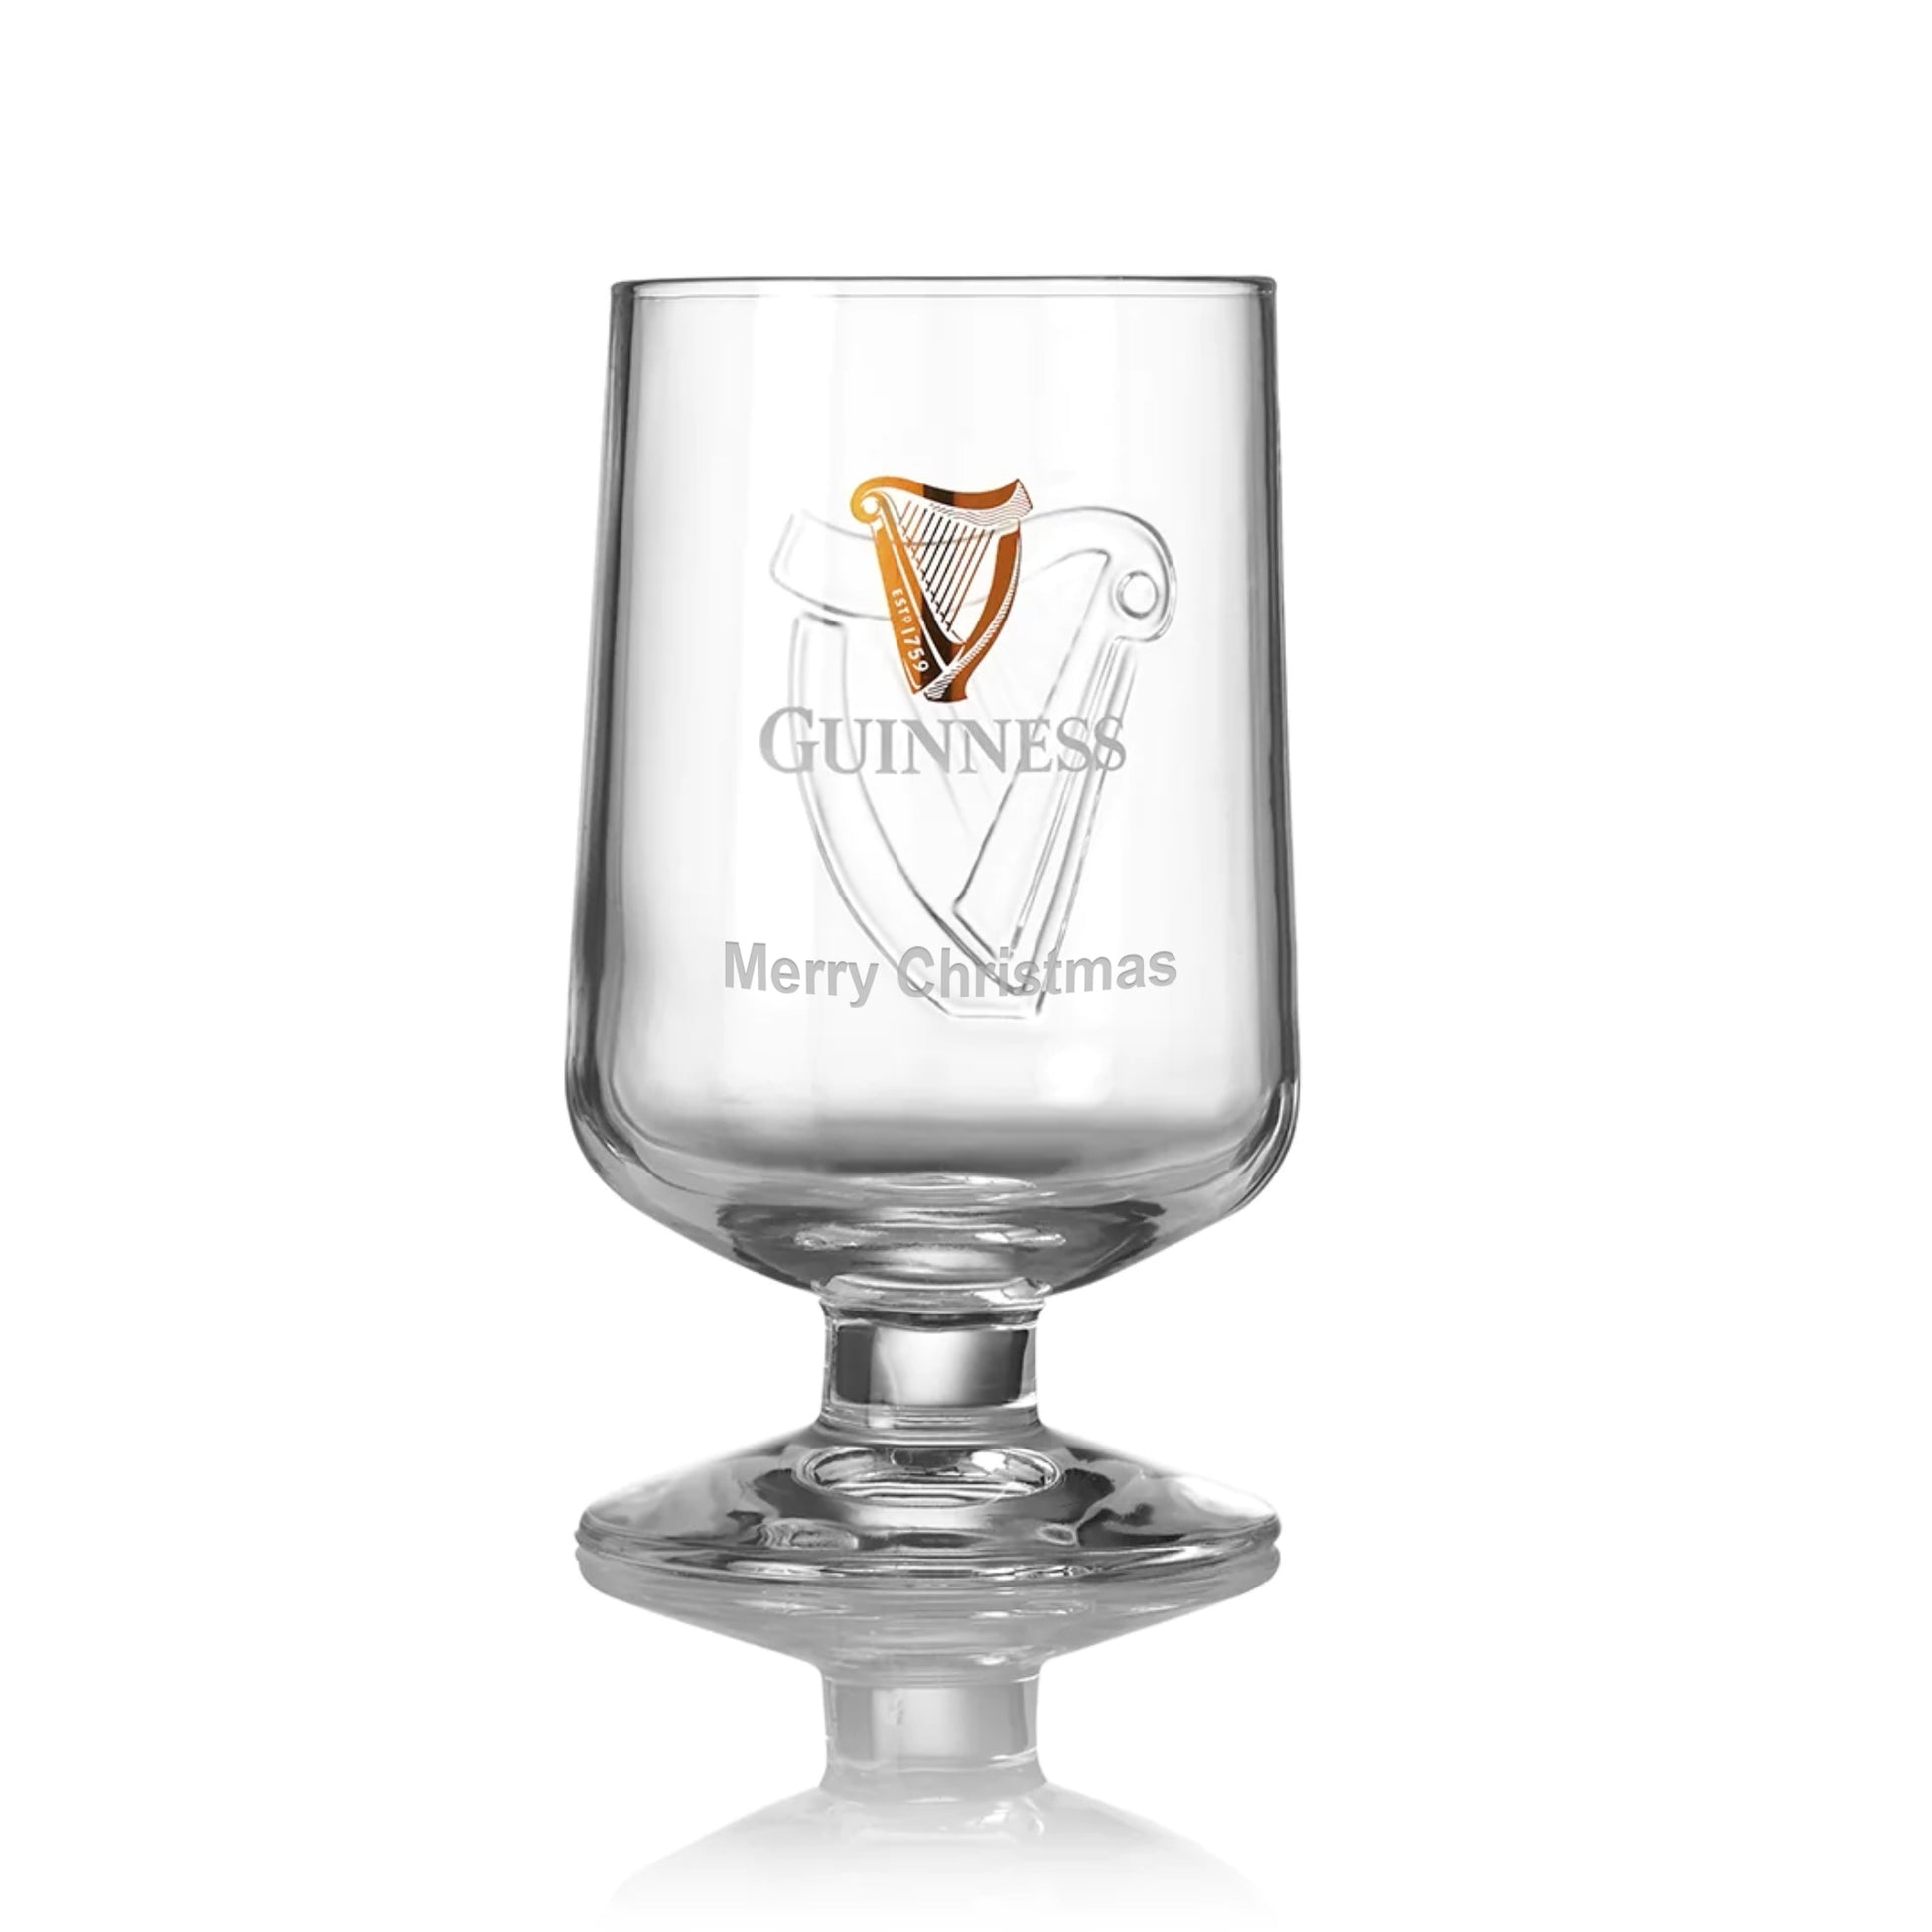 Guinness Embossed Stem Glass from Guinness UK.